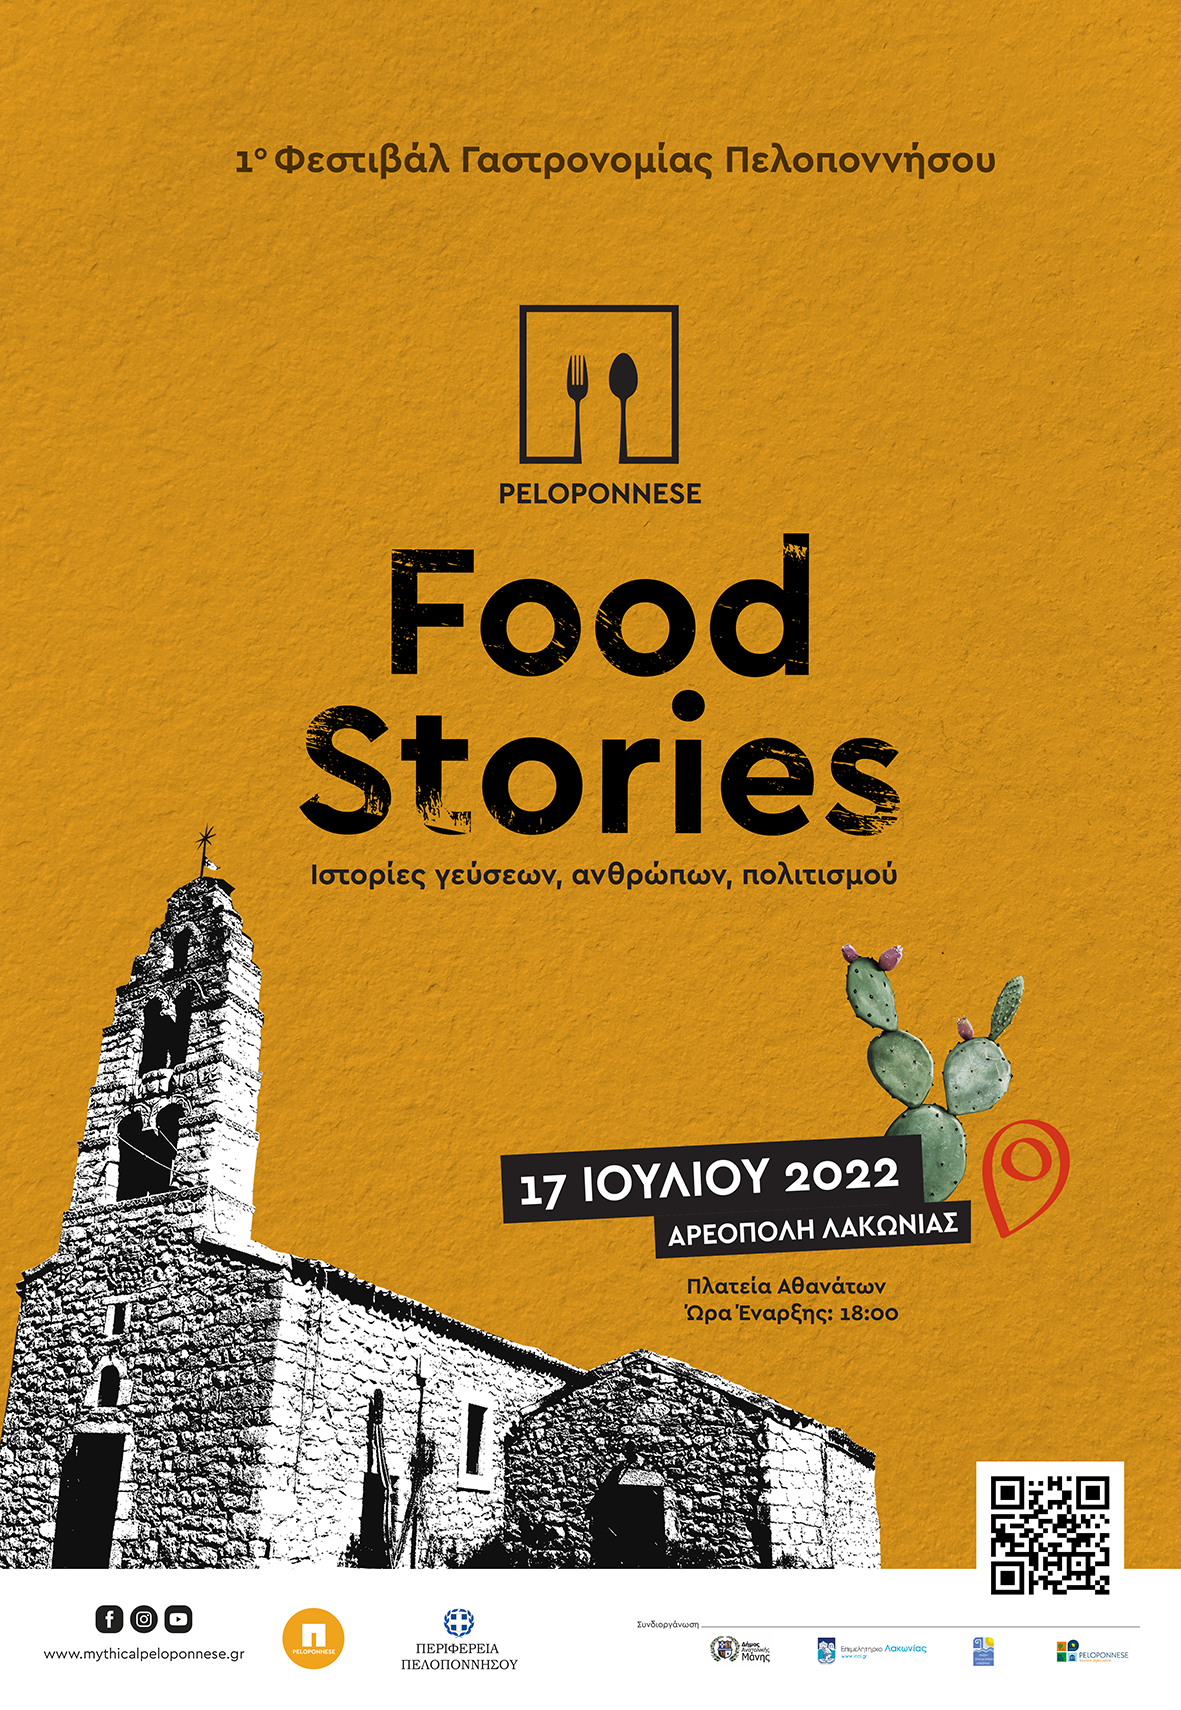 Peloponnese Food Stories